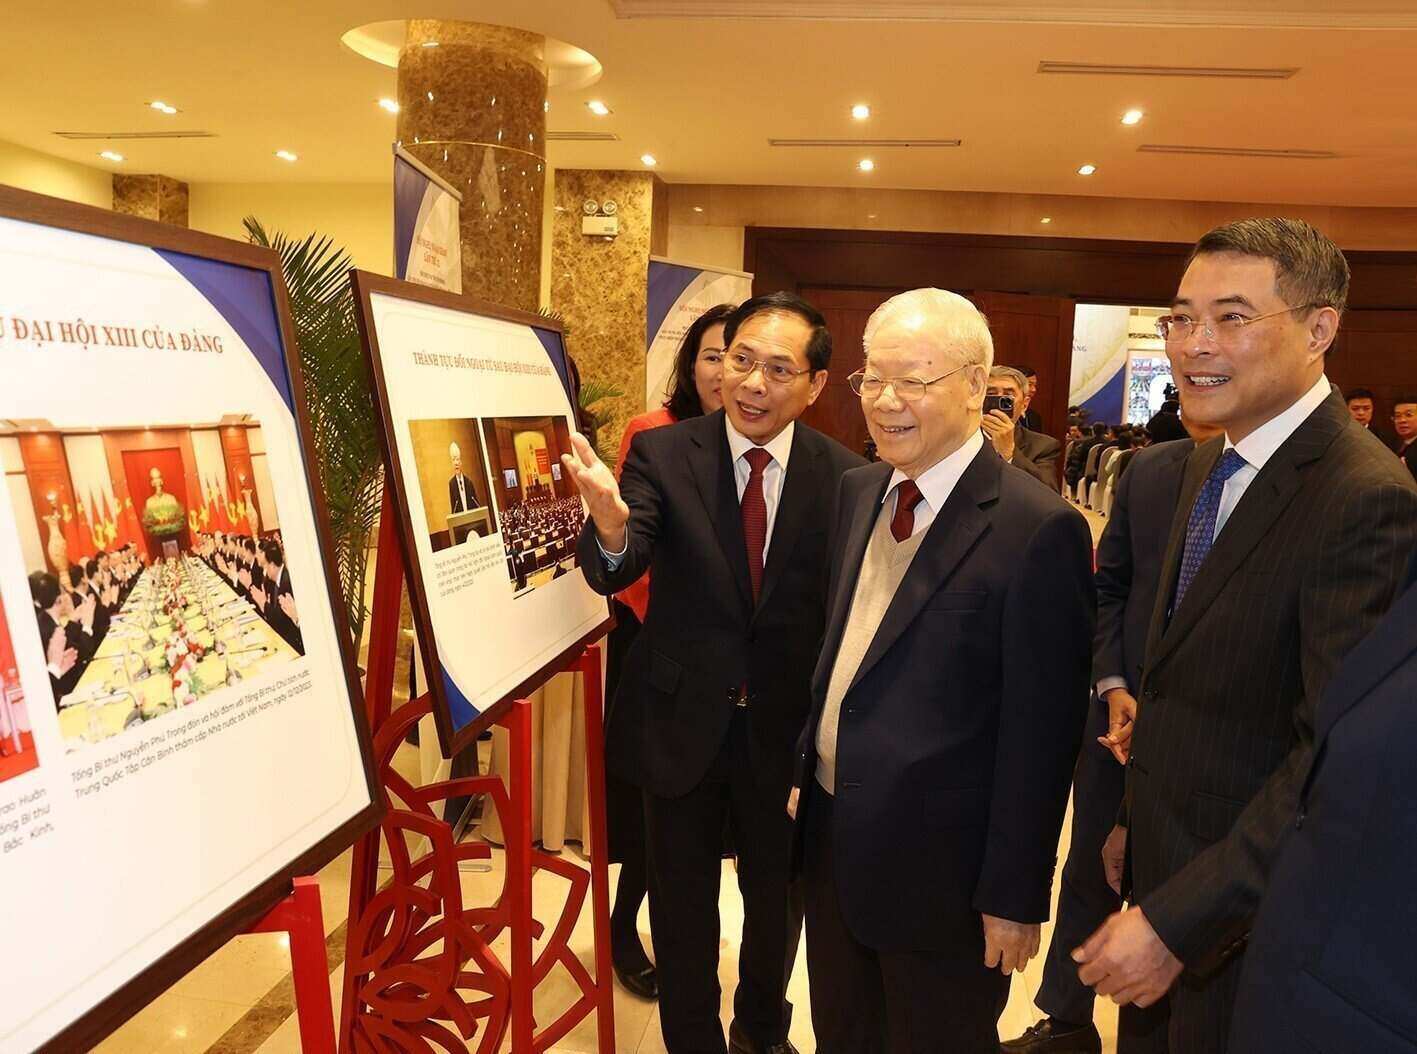 Tổng Bí thư Nguyễn Phú Trọng và các đại biểu tham quan trưng bày ảnh về Ngoại giao Việt Nam. Ảnh: TTXVN